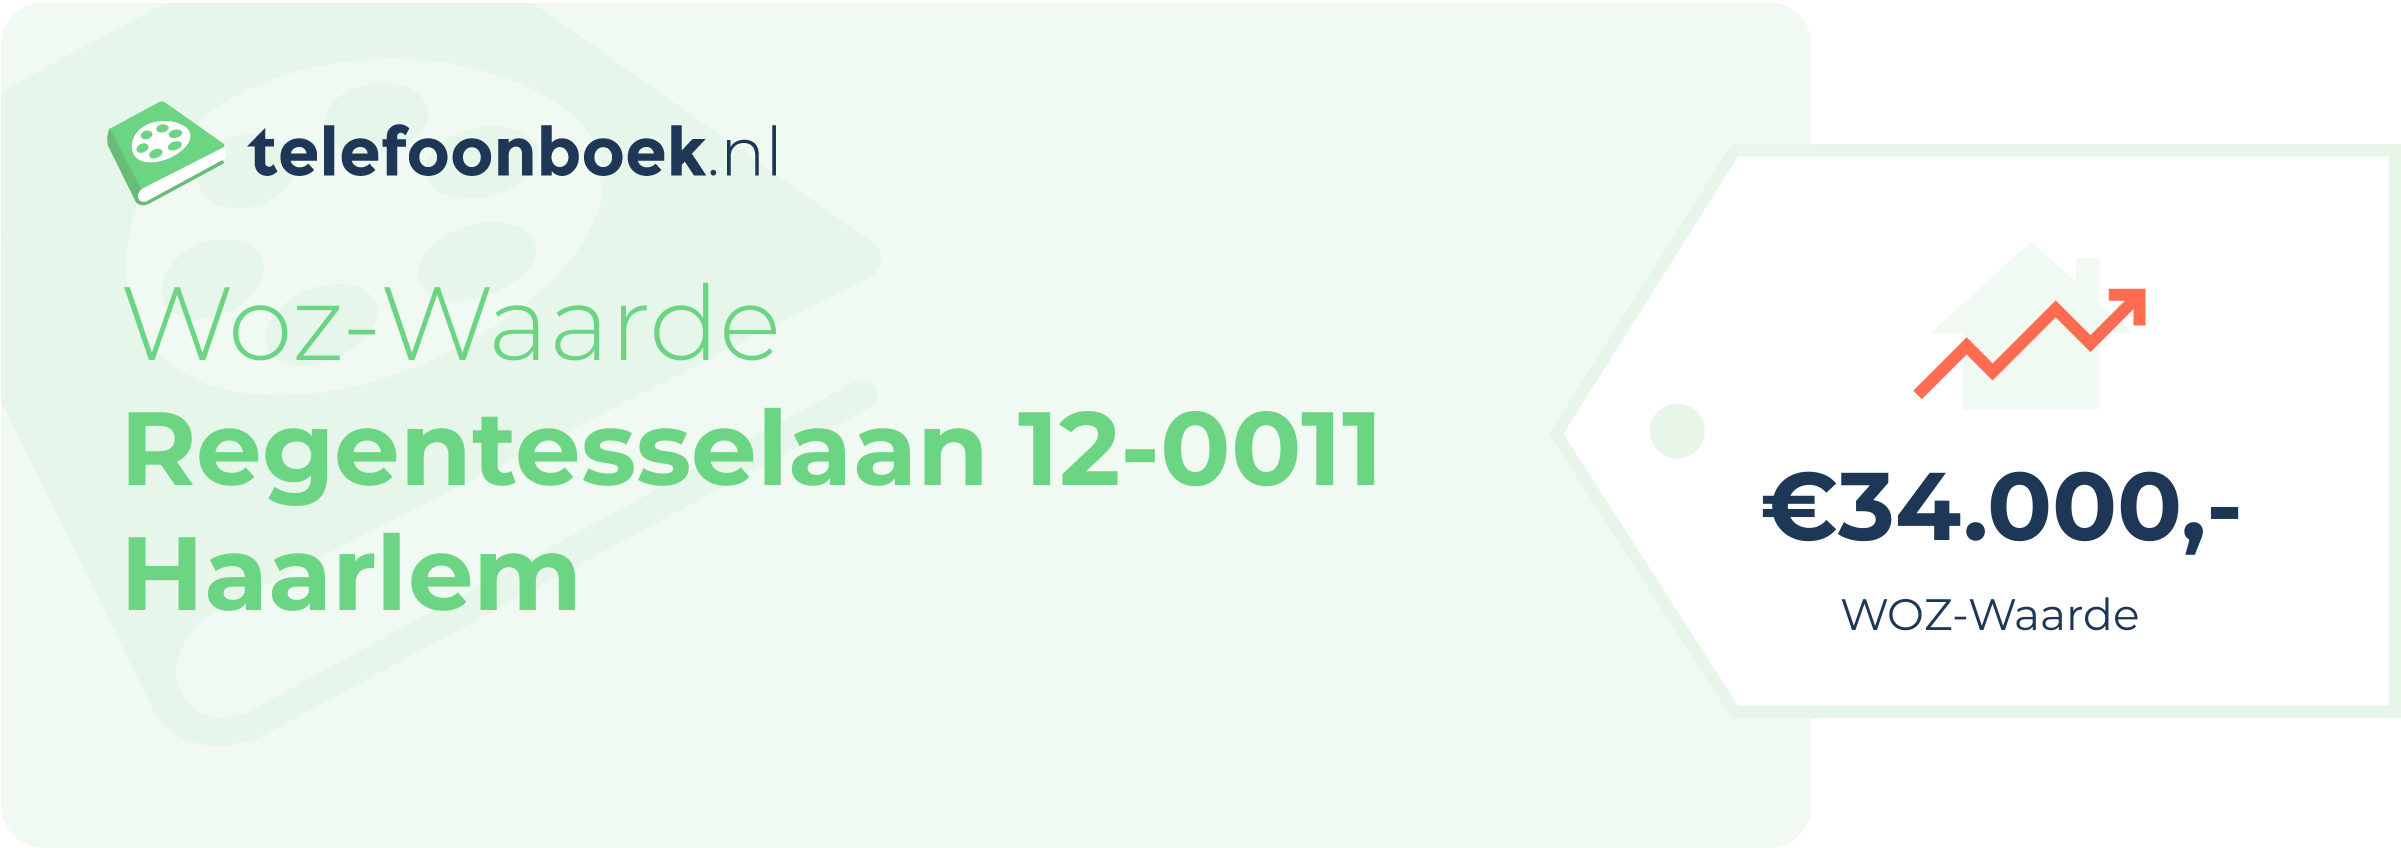 WOZ-waarde Regentesselaan 12-0011 Haarlem